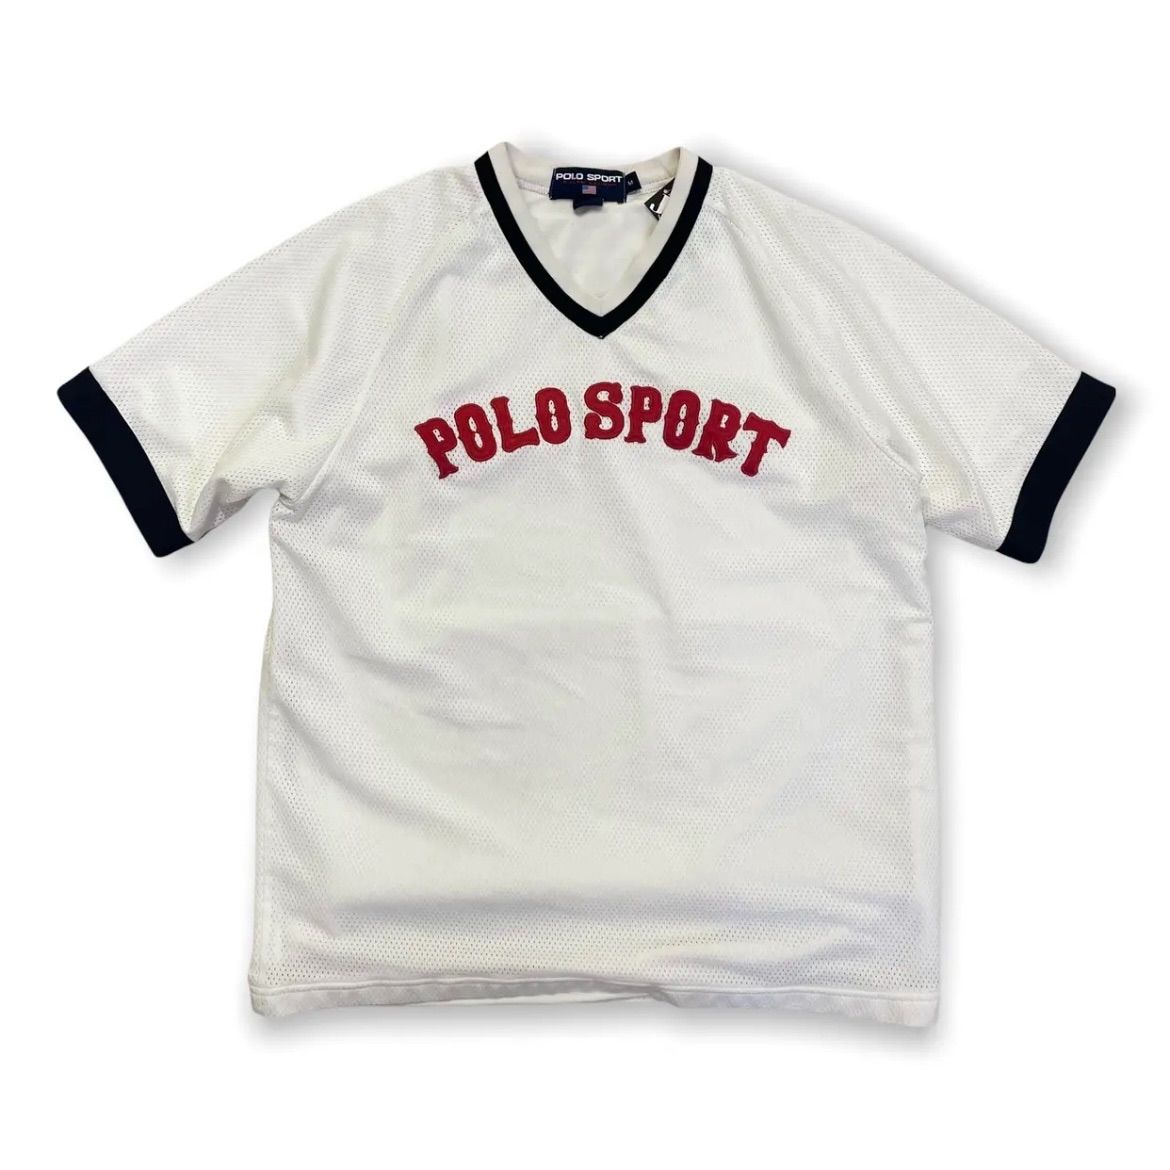 90s POLO SPORT ポロスポーツ メッシュゲームシャツ ラルフローレン